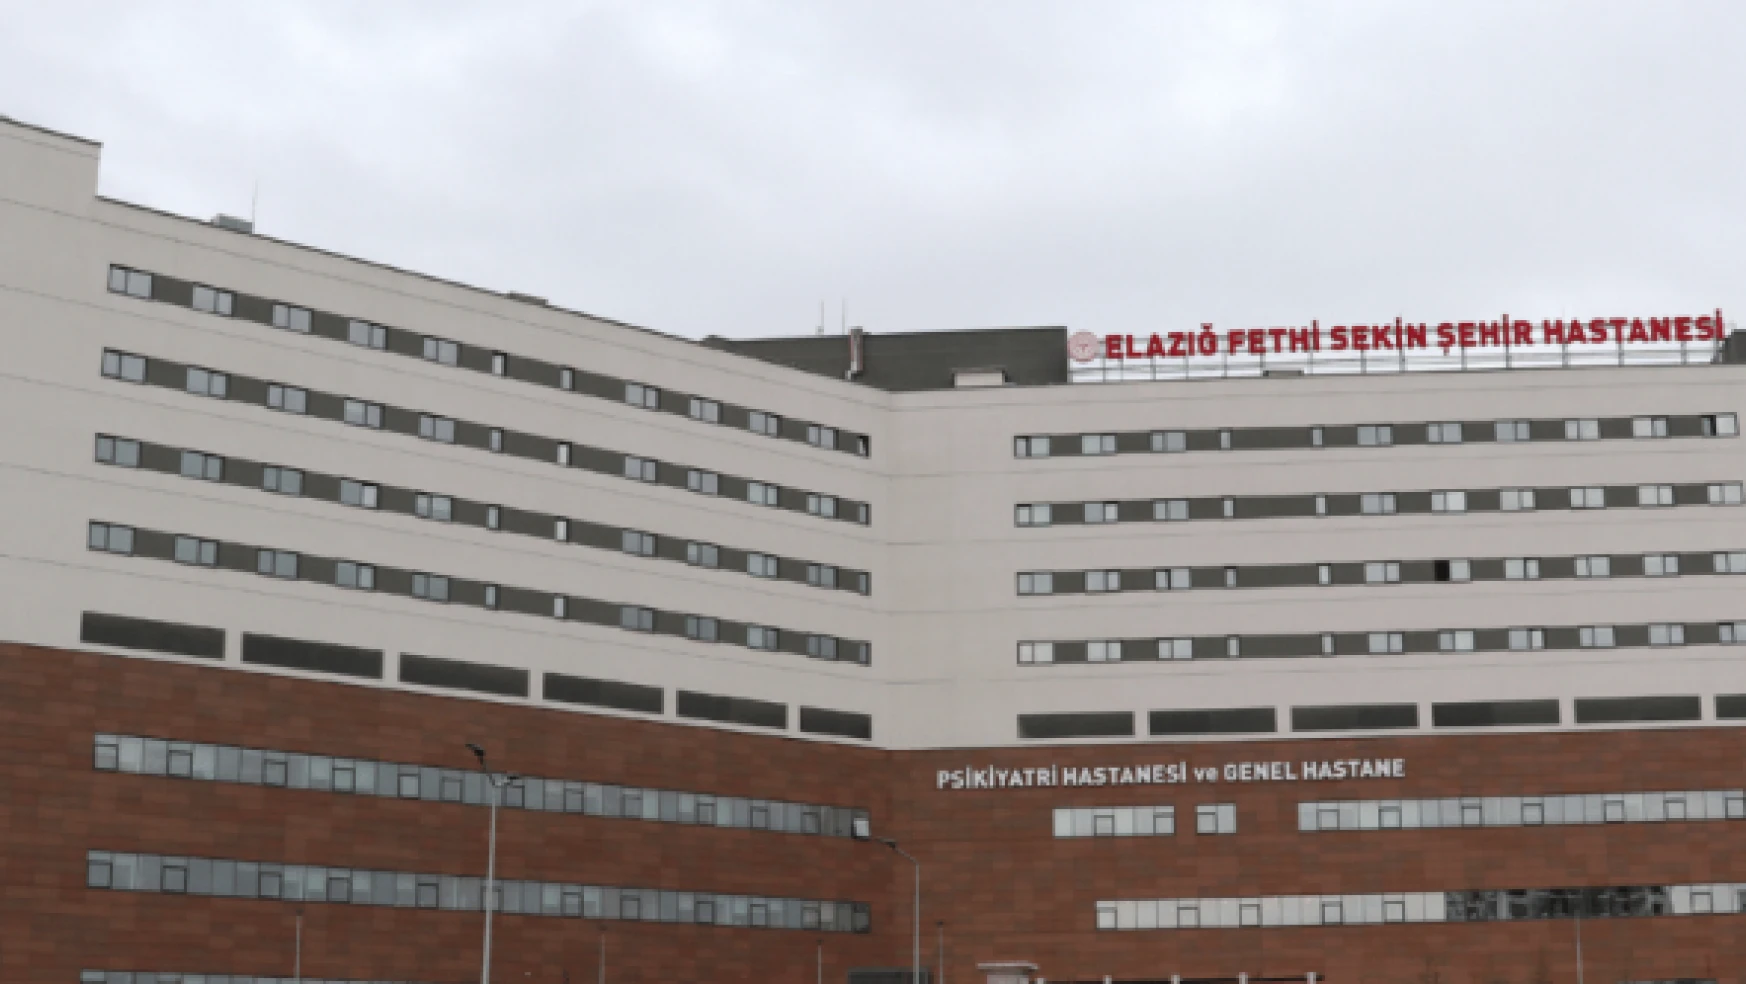 Elazığ Şehir Hastanesi depreme dayanıklılığı ile kesintisiz hizmet sunuyor